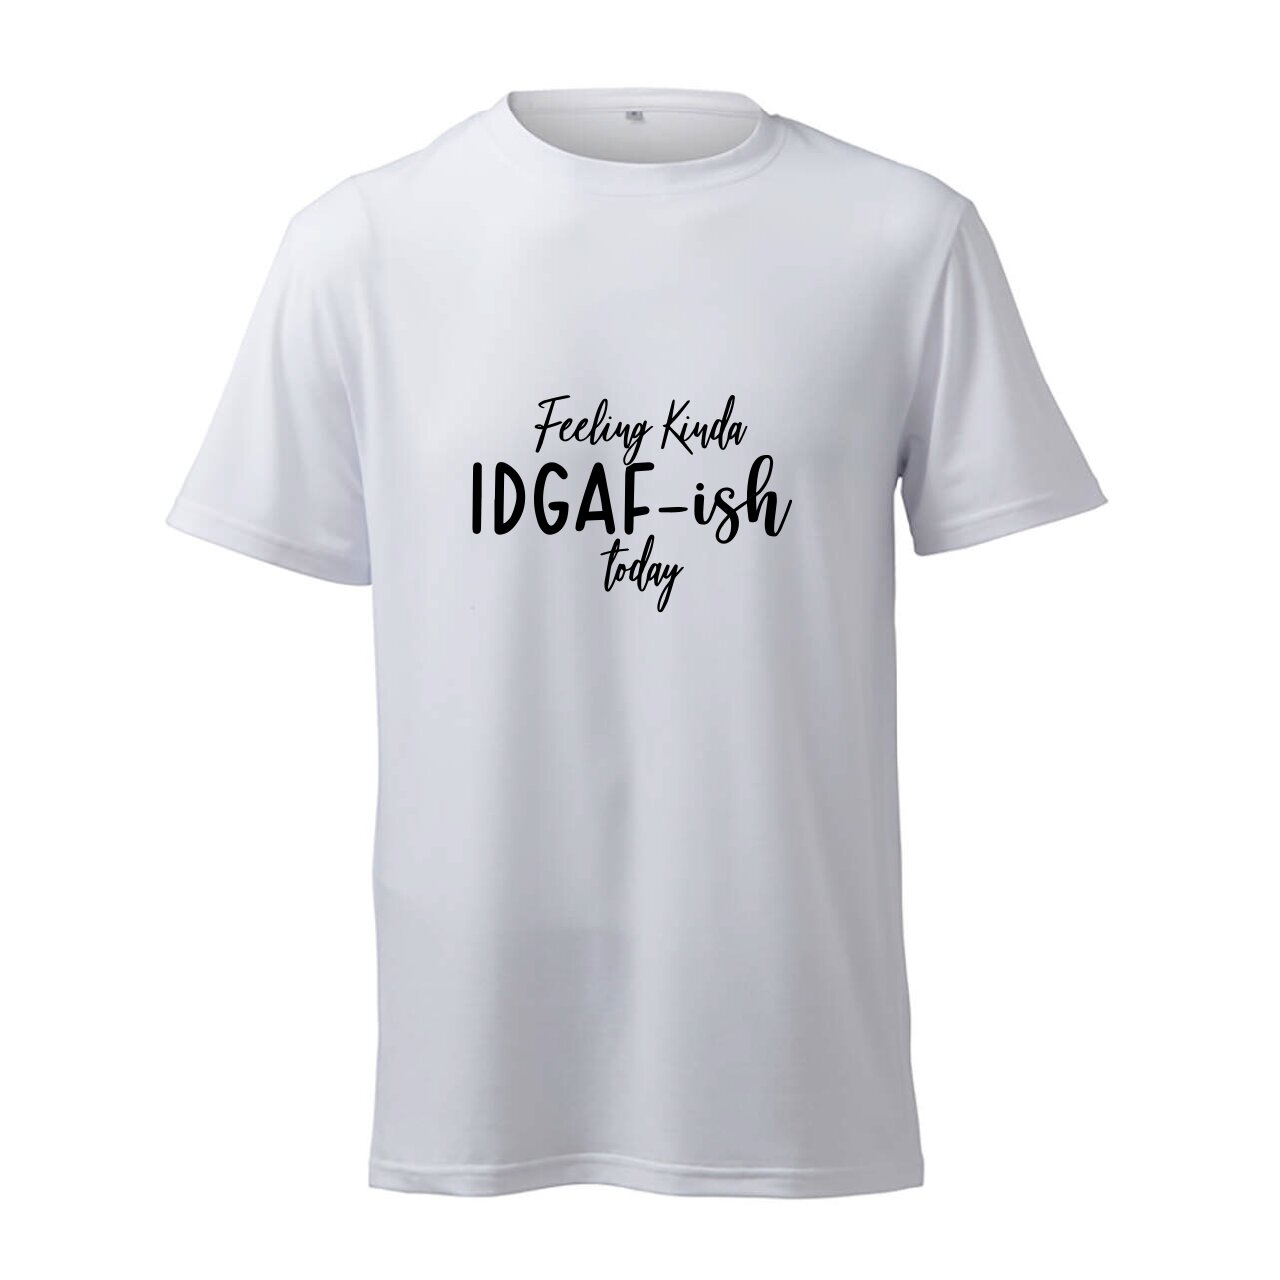 Feeling Kinda IDGAF-Ish Today - T-Shirt